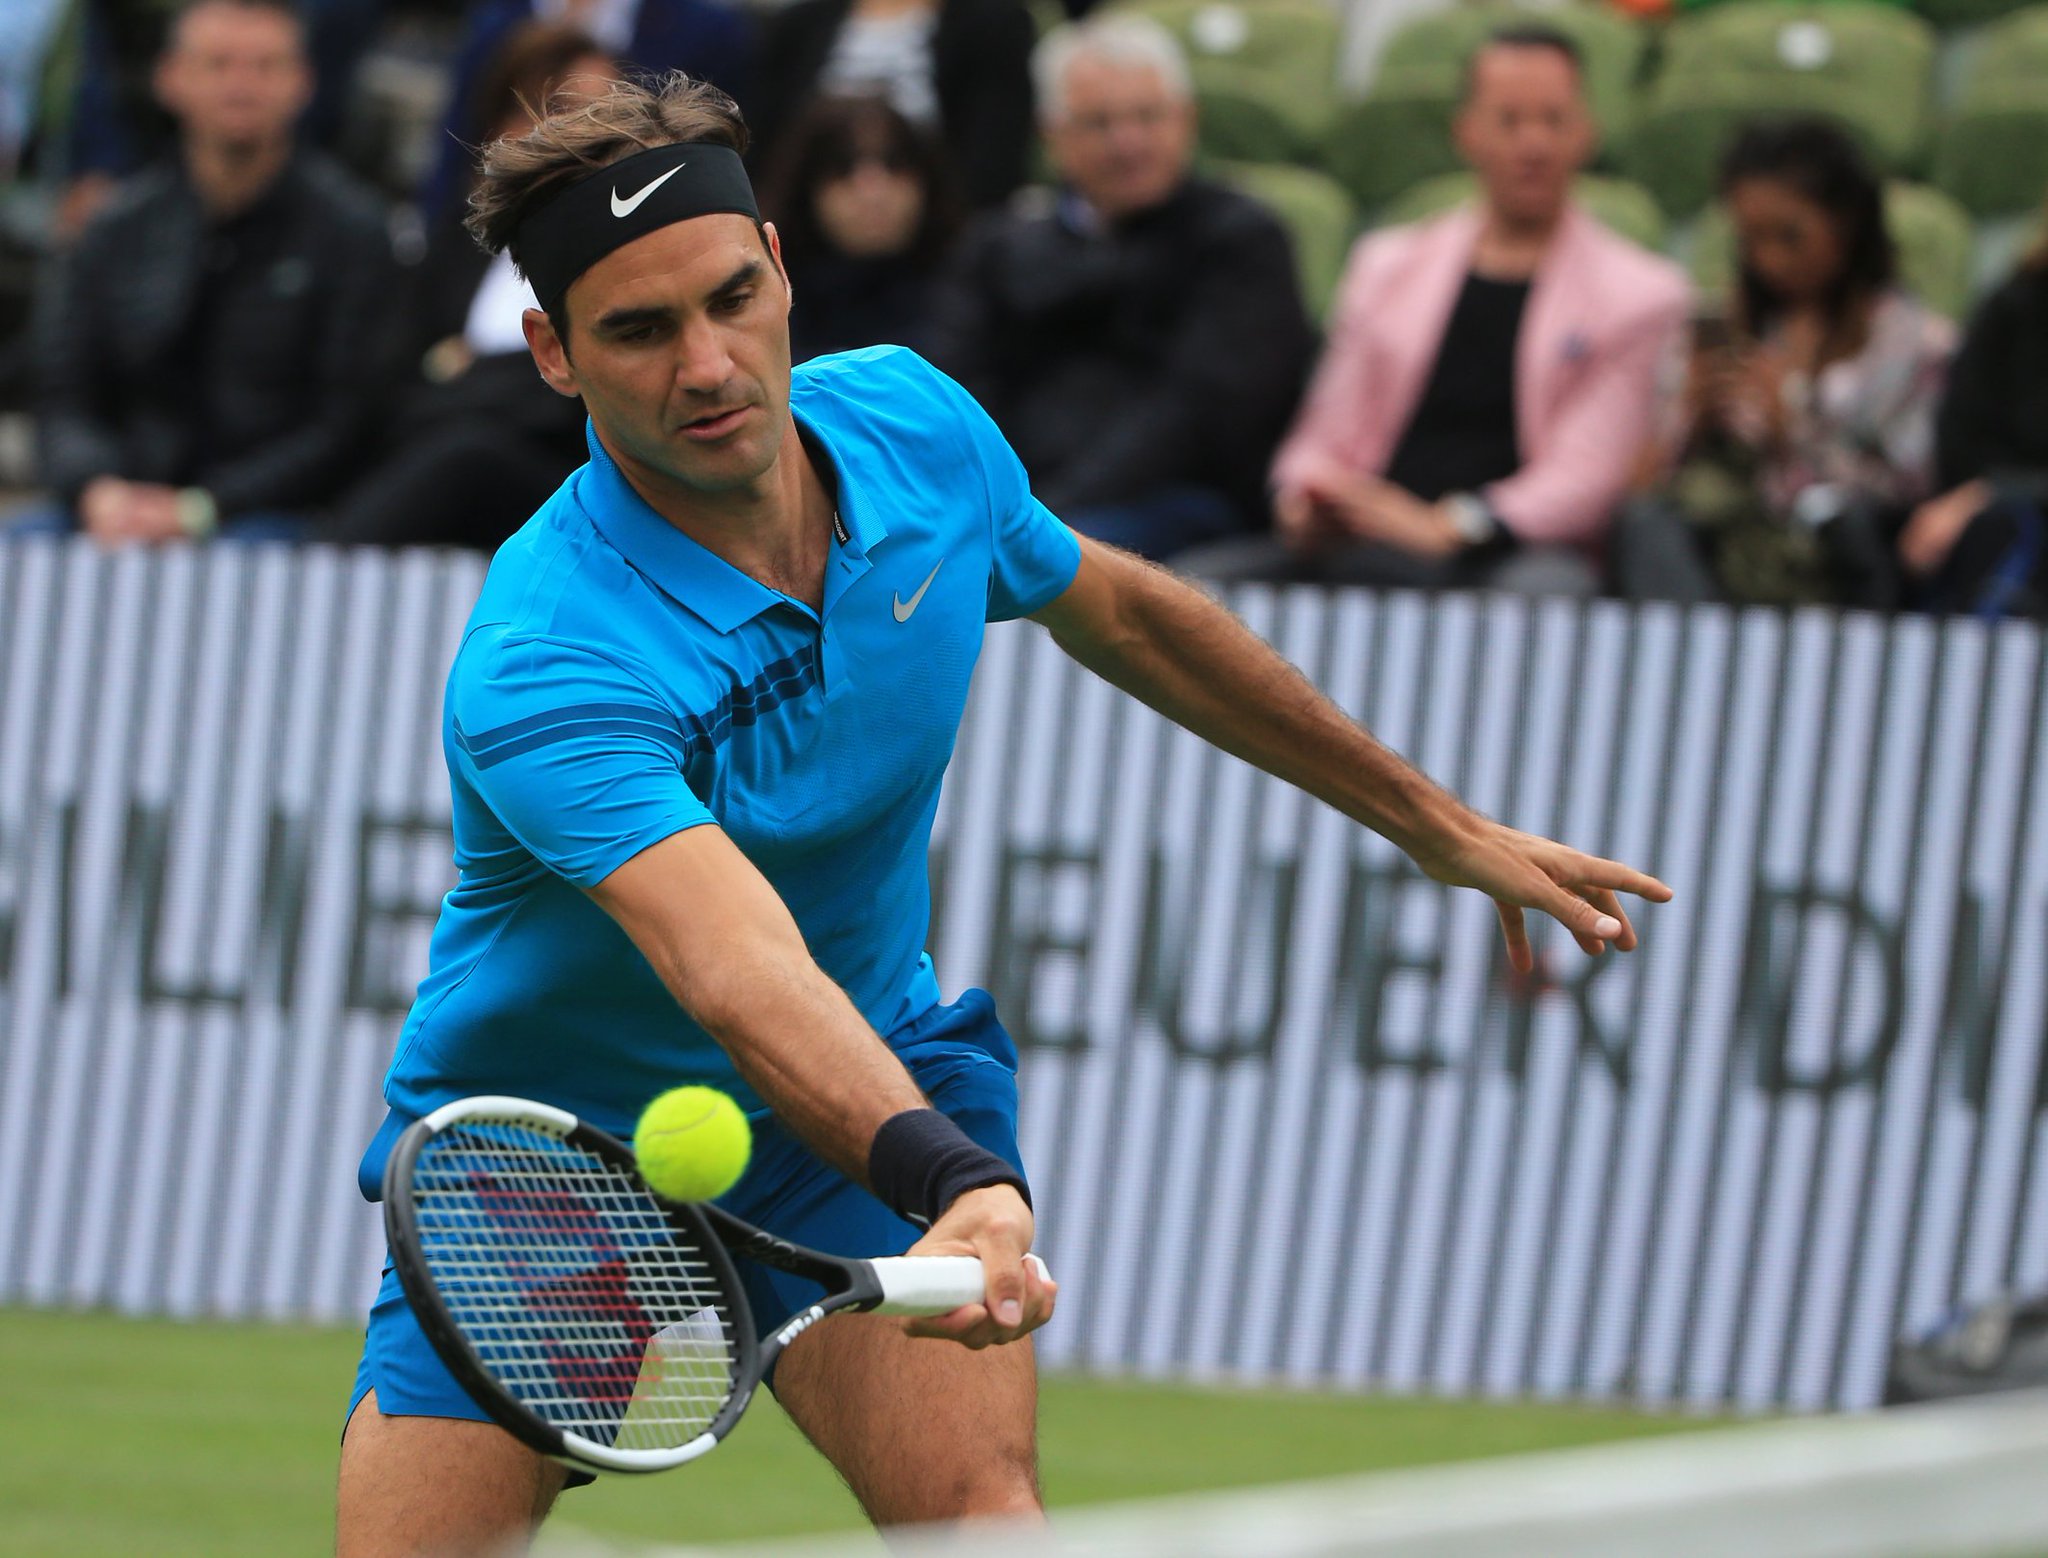 Federer Defeats Pella to Reach Mercedes Cup Semifinals